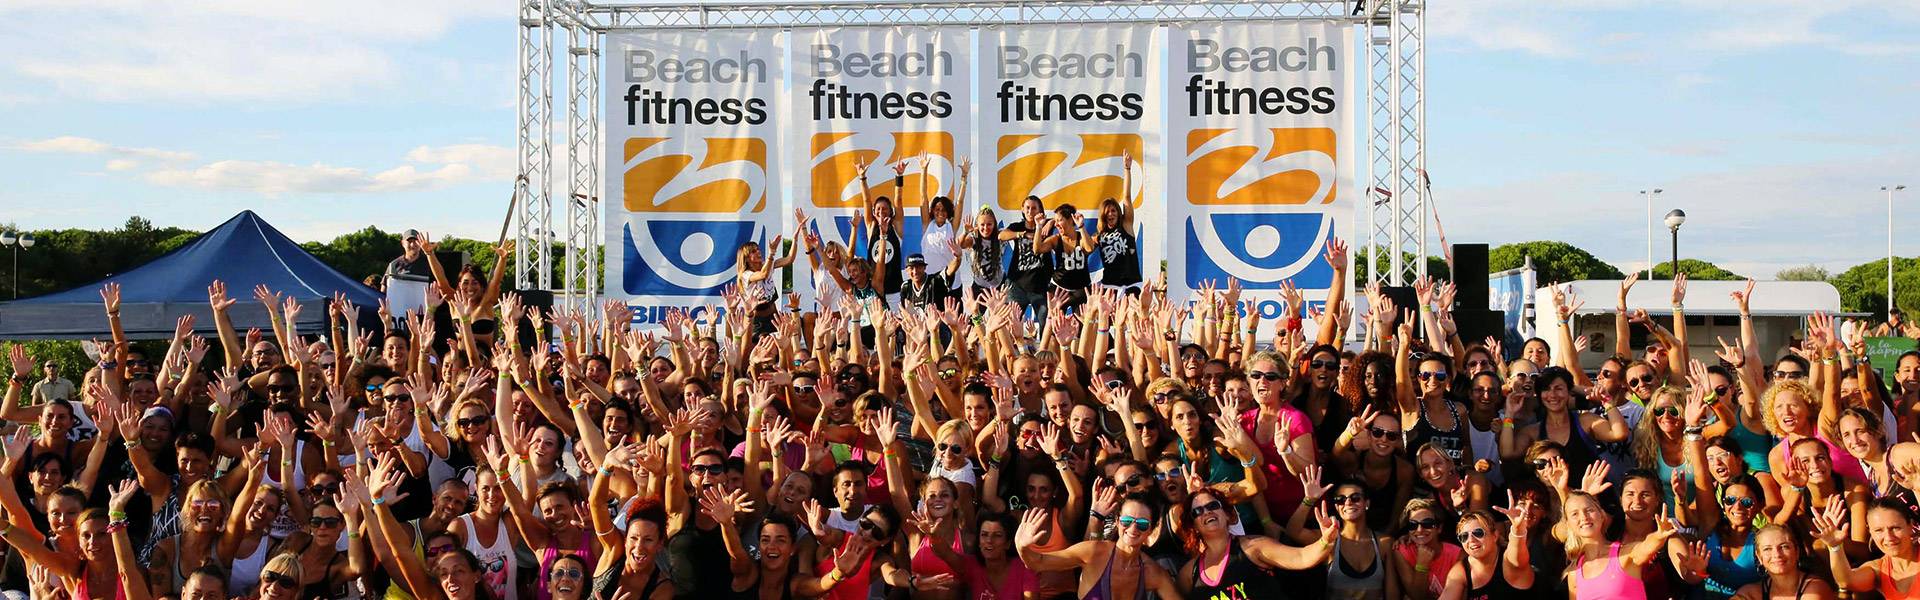 20-21-22 Settembre 2019 – Bibione Beach Fitness